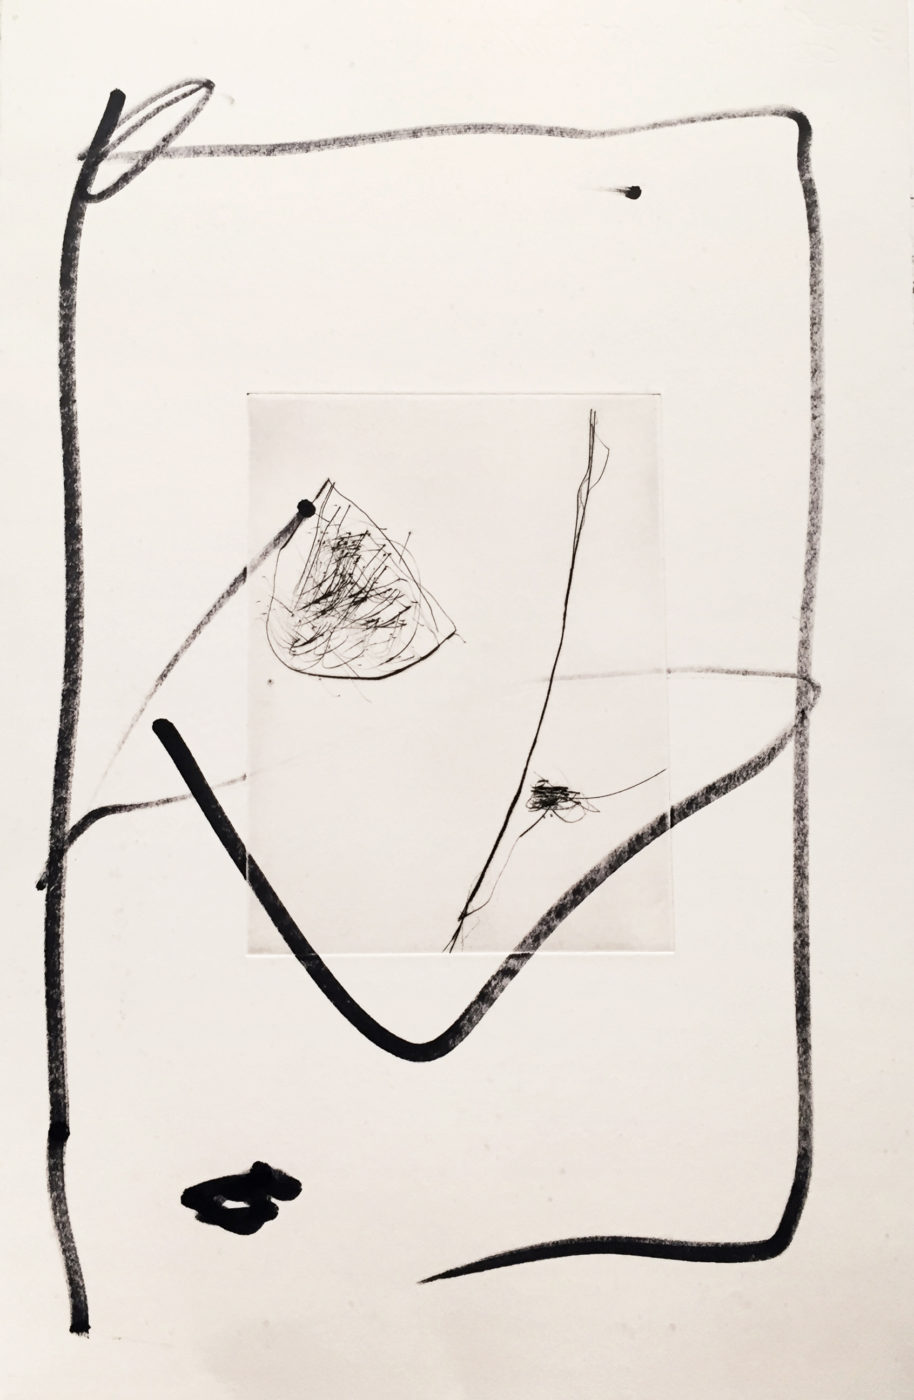 MARC FELD 2010-2016 LIGNES DE FUITE 5 Gravure sur zinc rehaussée au stylo feutre 28 x 38 cm tirage Patrick Vernet